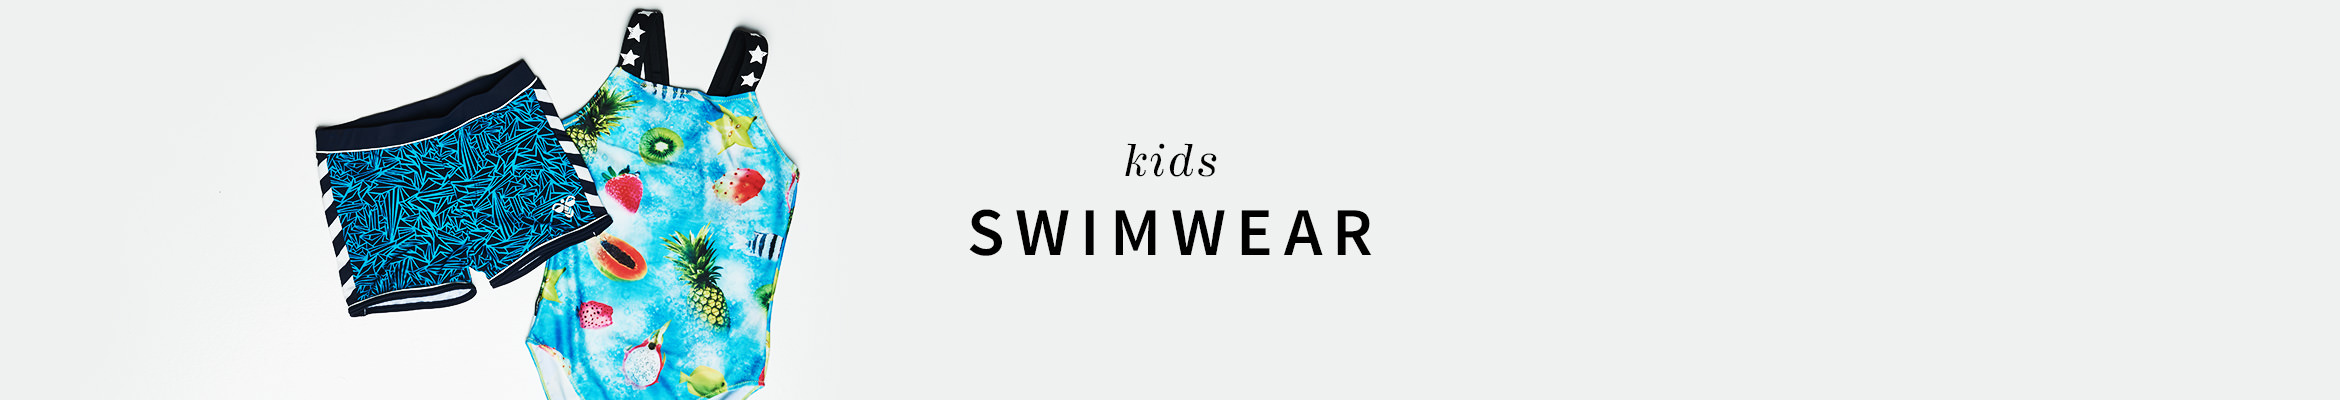 Aw16_swimwear_k_en